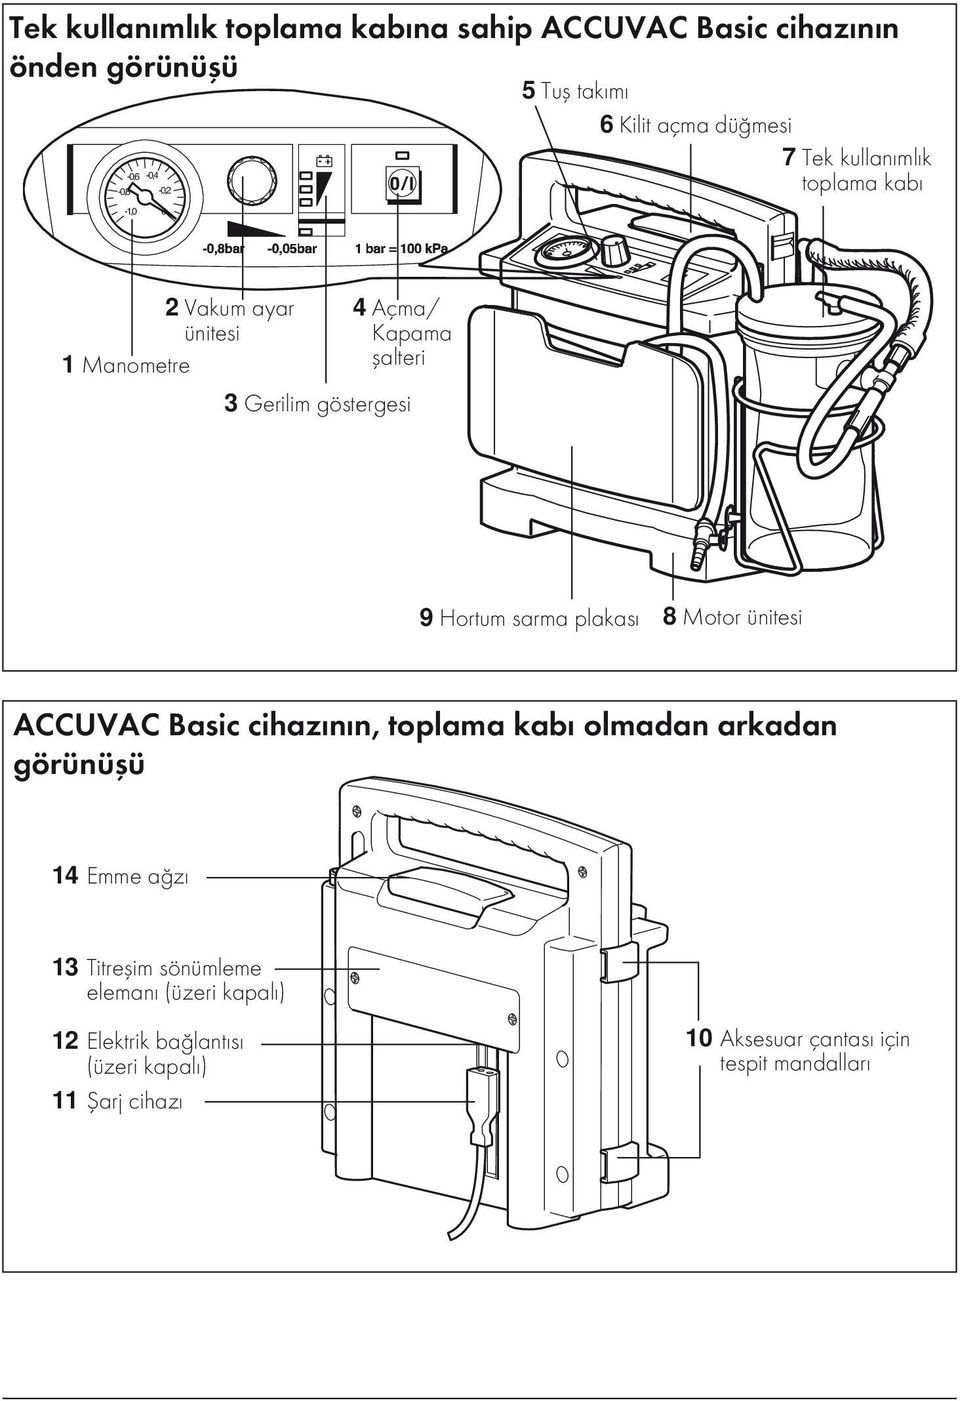 Hortum sarma plakası 8 Motor ünitesi ACCUVAC Basic cihazının, toplama kabı olmadan arkadan görünüşü 14 Emme ağzı 13